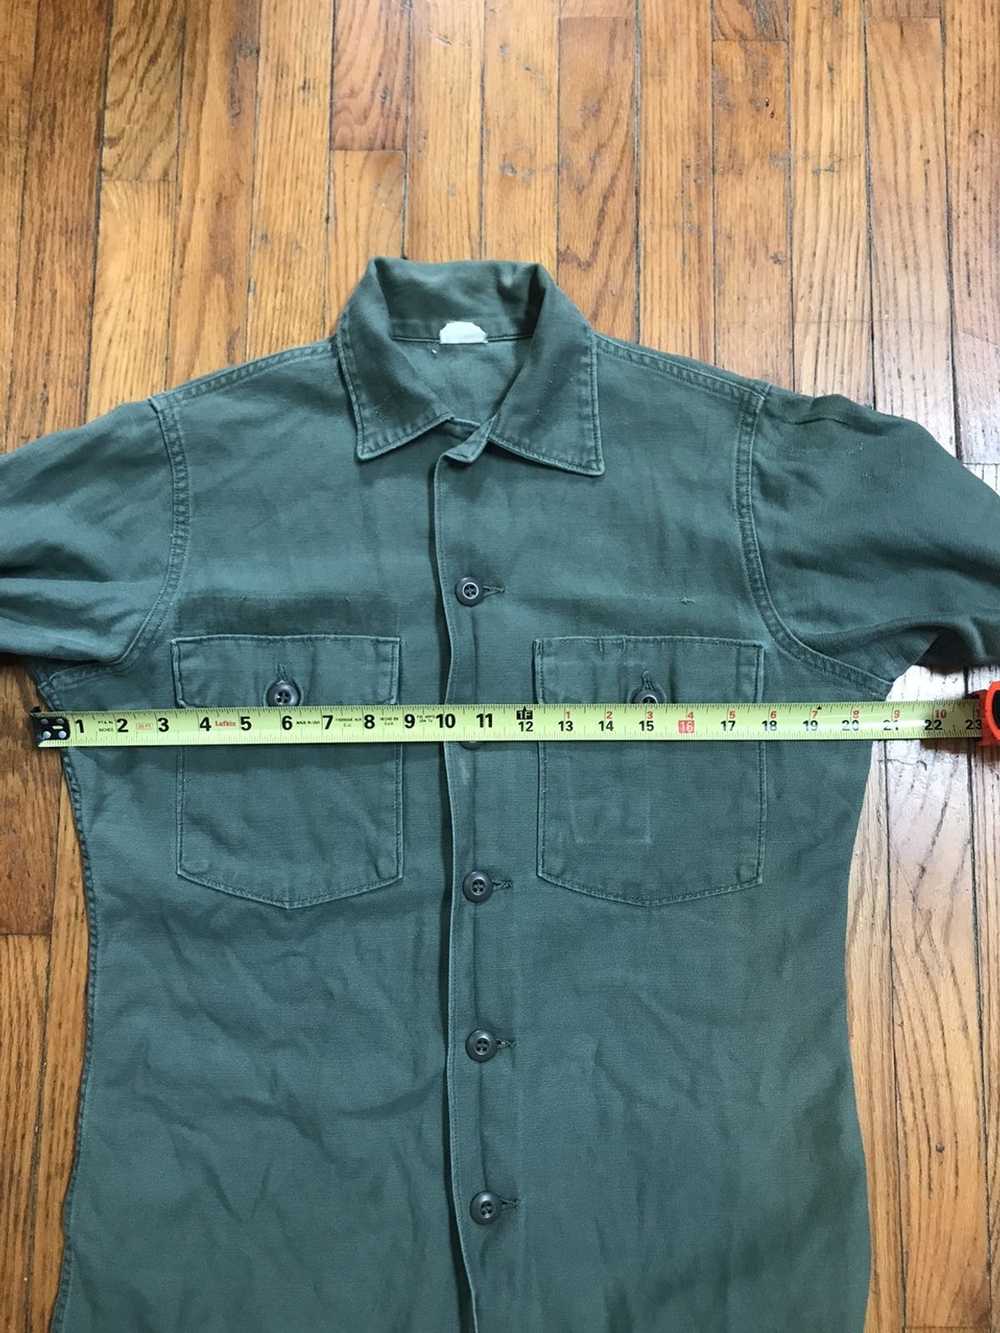 Military × Vintage Vintage og107 shirt with graph… - image 8